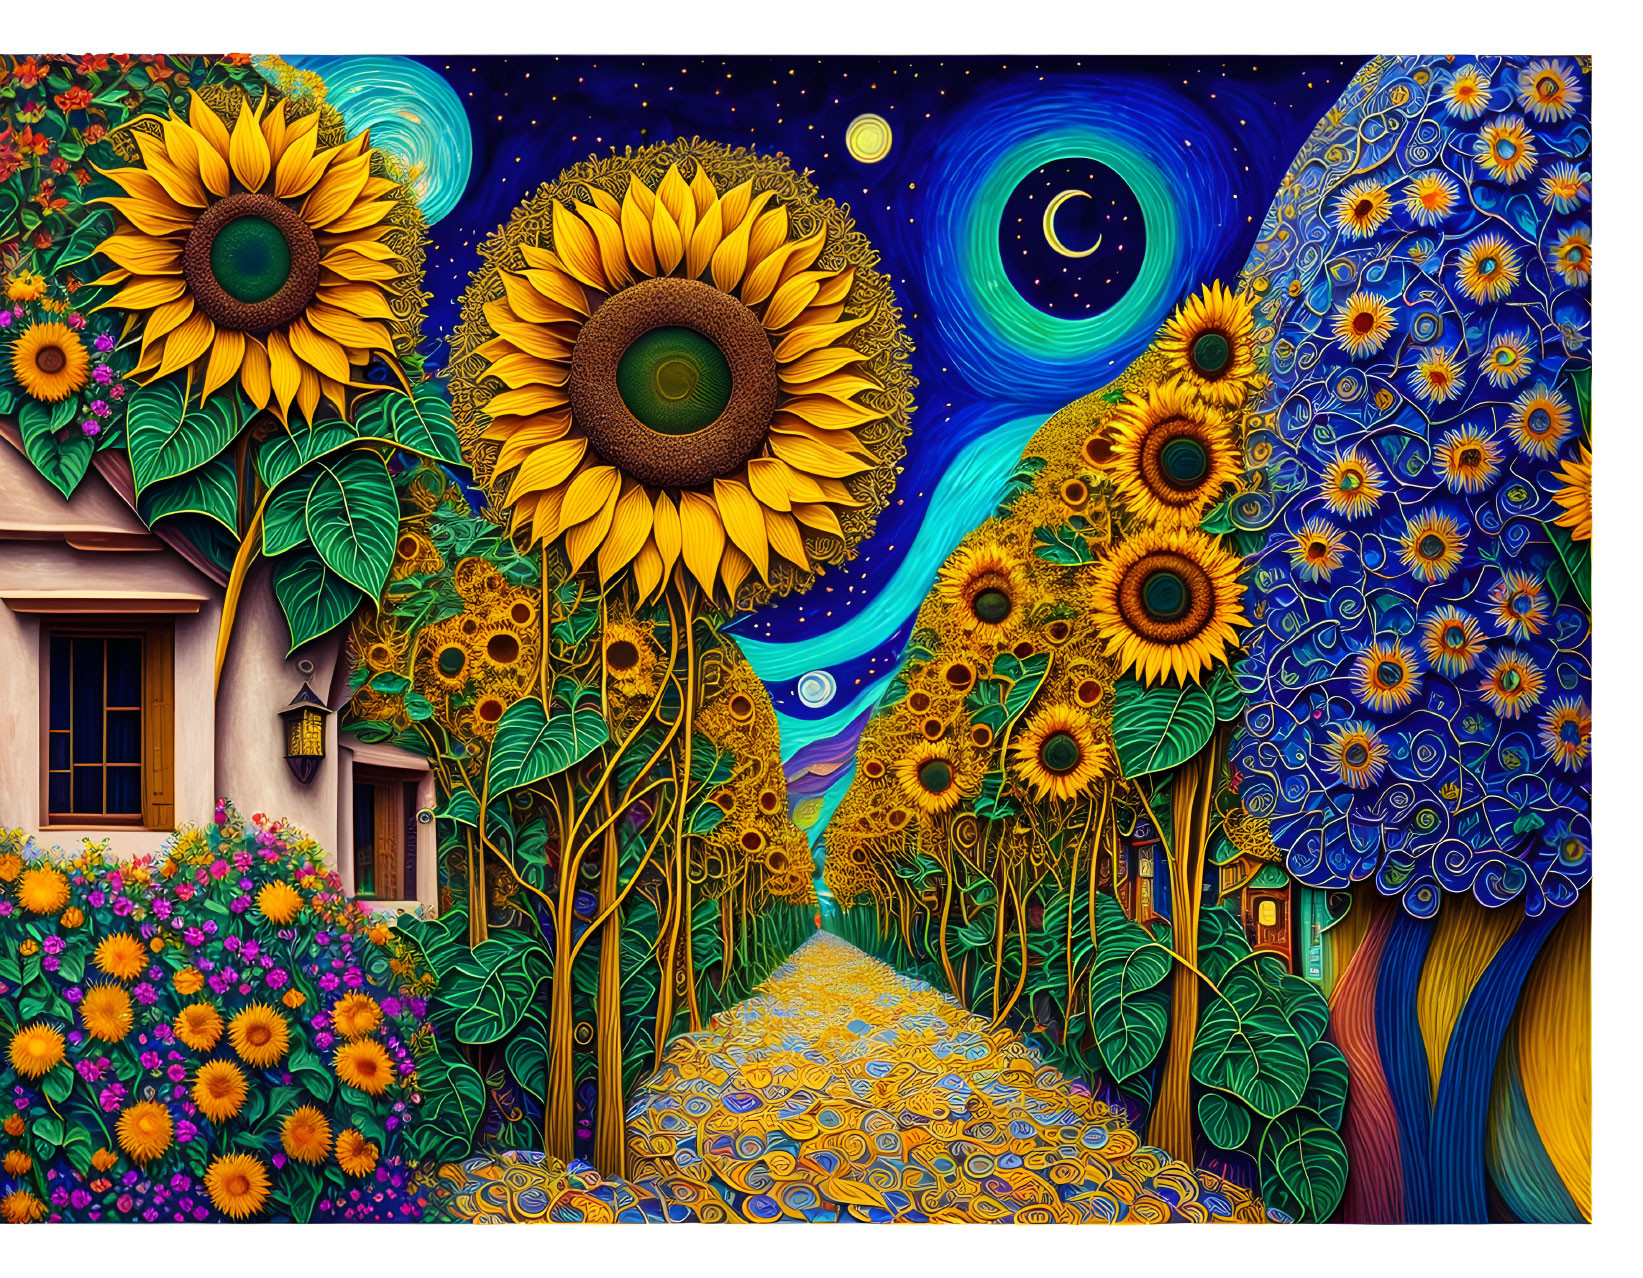 Sunflower alley